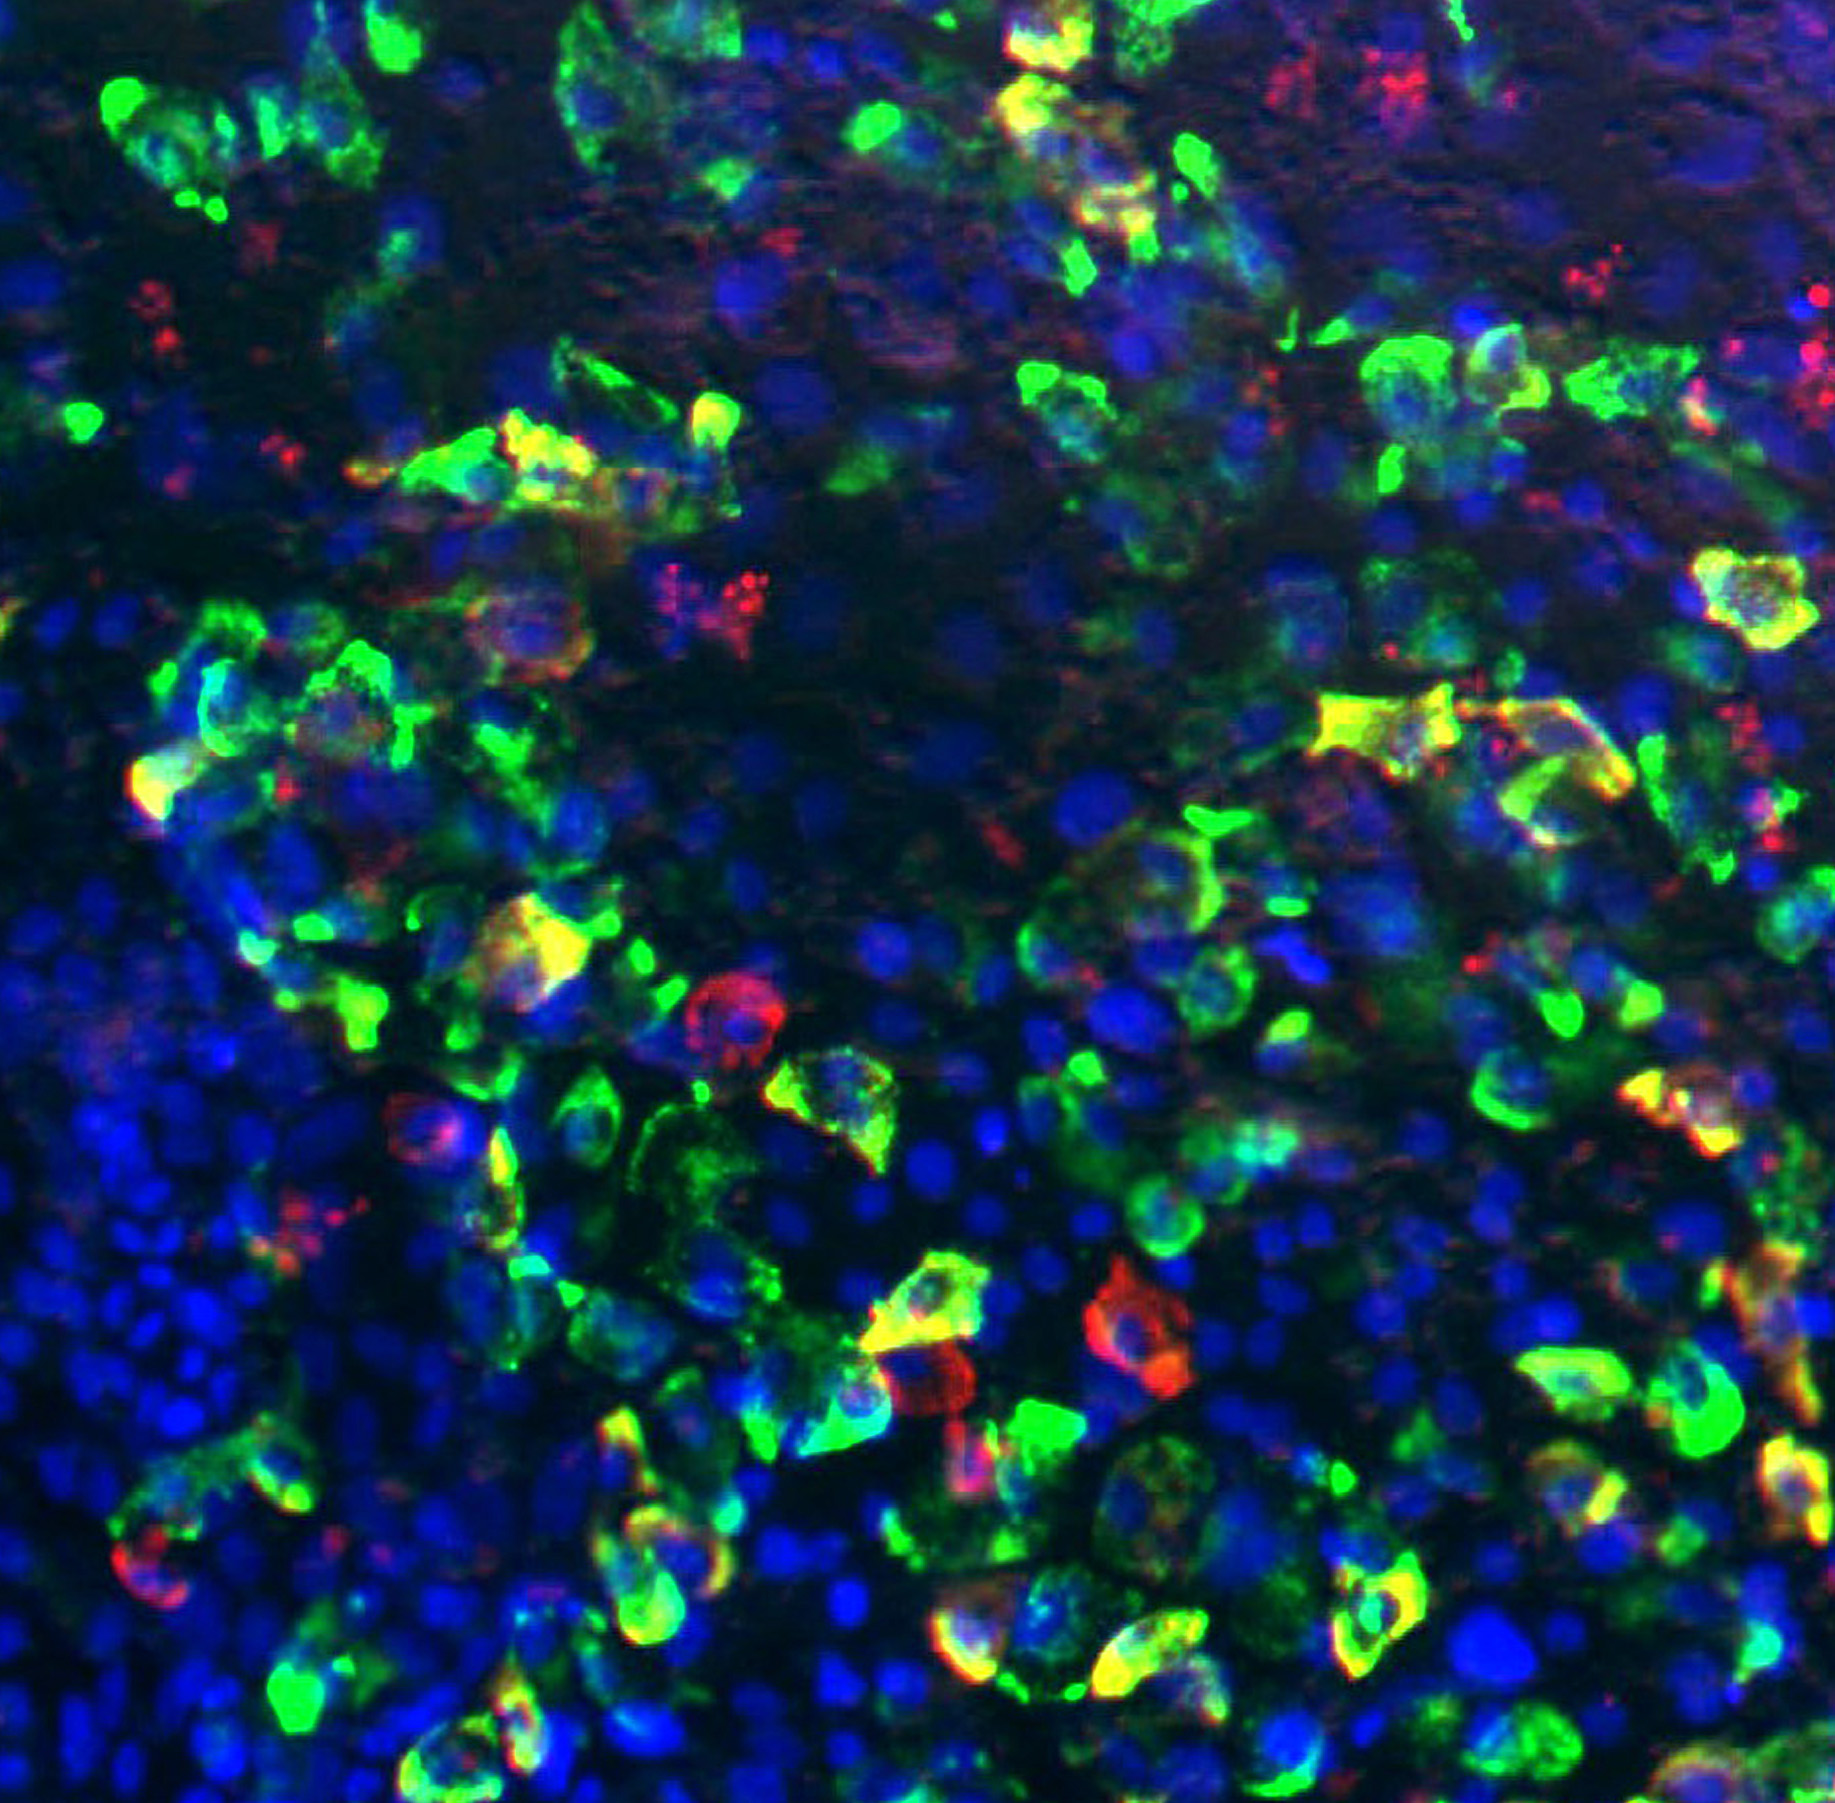 الشكل (2): صورة تم الحصول عليها باستخدام مجهر فلوري تظهر إنتاج خلايا تشبه الجزيرة من الخلايا الجذعية المحفزة (خضراء: إنسولين؛ حمراء: جلوكاجون؛ زرقاء: دابي، وهي وصمة فلورسنت فلورية ترتبط بقوة بالحمض النووي بالنيكليوتيدات الذي يلوث نوى الخلايا).